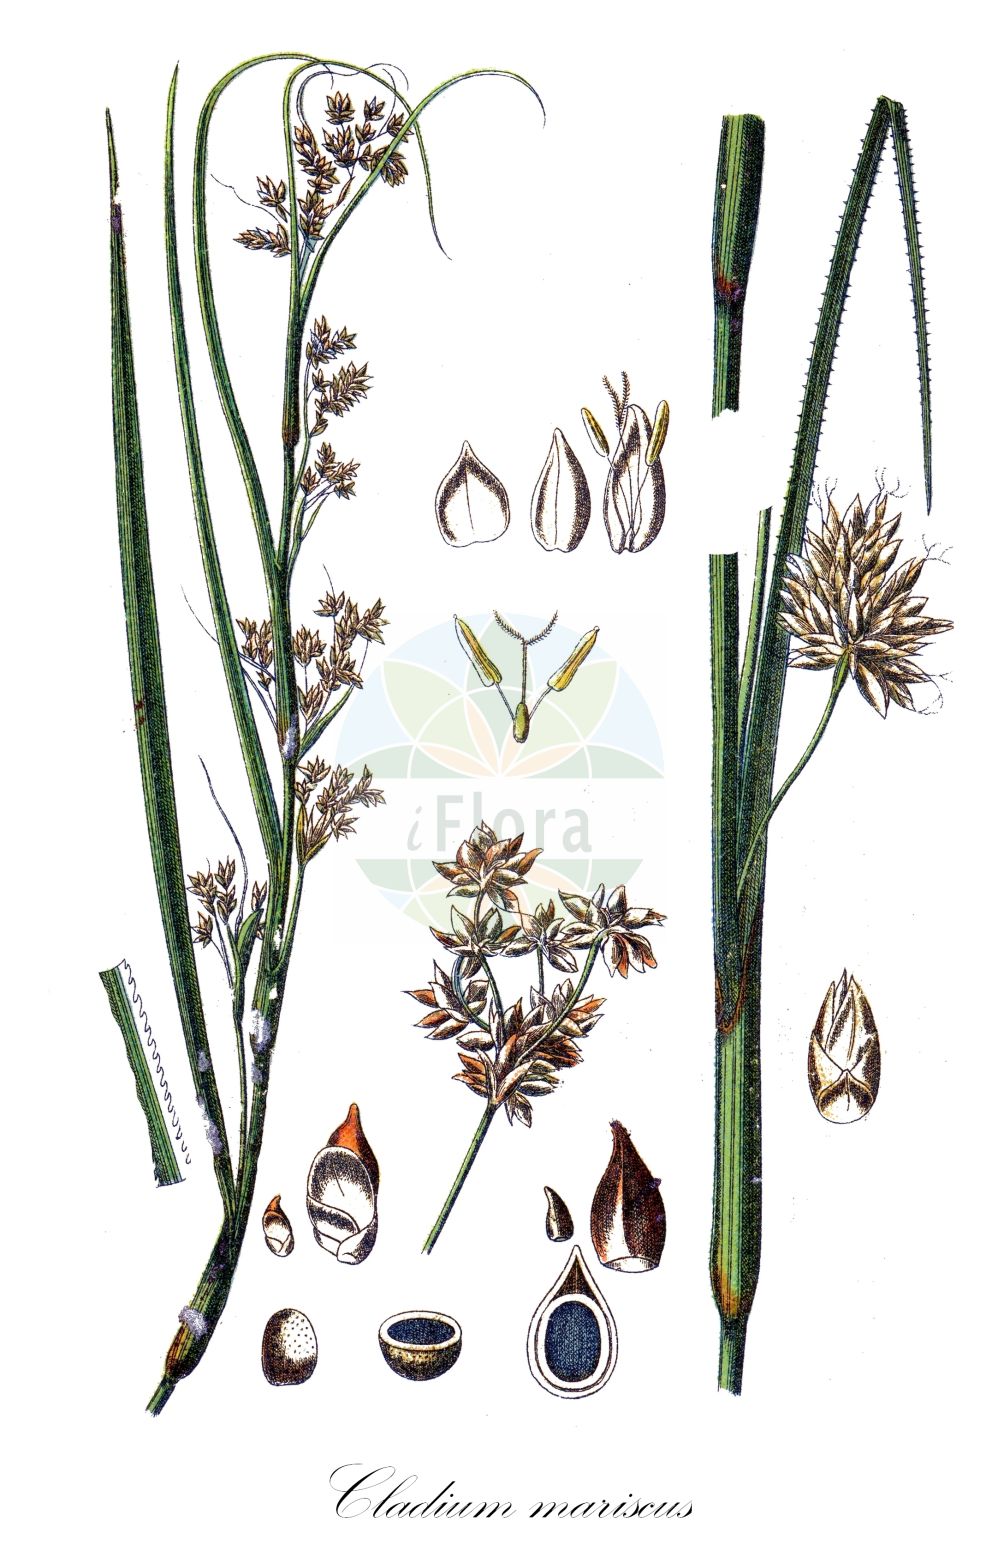 Historische Abbildung von Cladium mariscus (Binsenschneide - Great Fen-Sedge). Das Bild zeigt Blatt, Bluete, Frucht und Same. ---- Historical Drawing of Cladium mariscus (Binsenschneide - Great Fen-Sedge). The image is showing leaf, flower, fruit and seed.(Cladium mariscus,Binsenschneide,Great Fen-Sedge,Cladium grossheimii,Cladium mariscus,Isolepis martii,Schoenus mariscus,Binsenschneide,Binsen-Schneide,Great Fen-Sedge,Cut-Sedge,Swamp Sawgrass,Galigaan,Smooth Sawgrass,Twig Rush,Cladium,Schneide,Cut-Sedge,Cyperaceae,Sauergräser,Sedge family,Blatt,Bluete,Frucht,Same,leaf,flower,fruit,seed,Sturm (1796f))